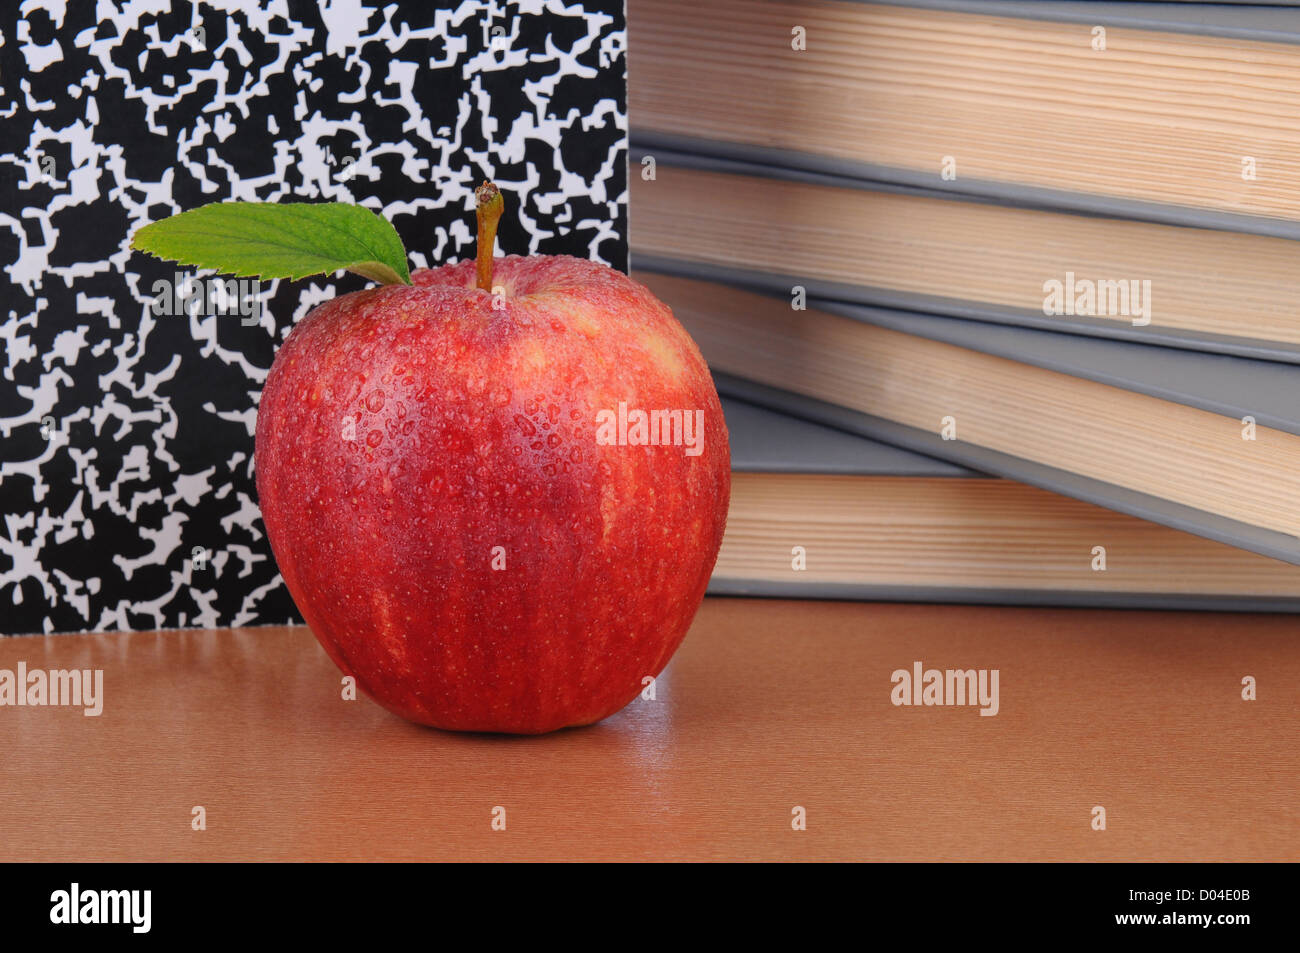 Nahaufnahme eines roten Apfels auf einem Lehrer Schreibtisch. Bücher und Zusammensetzung Buch bilden den Hintergrund. Querformat. Stockfoto